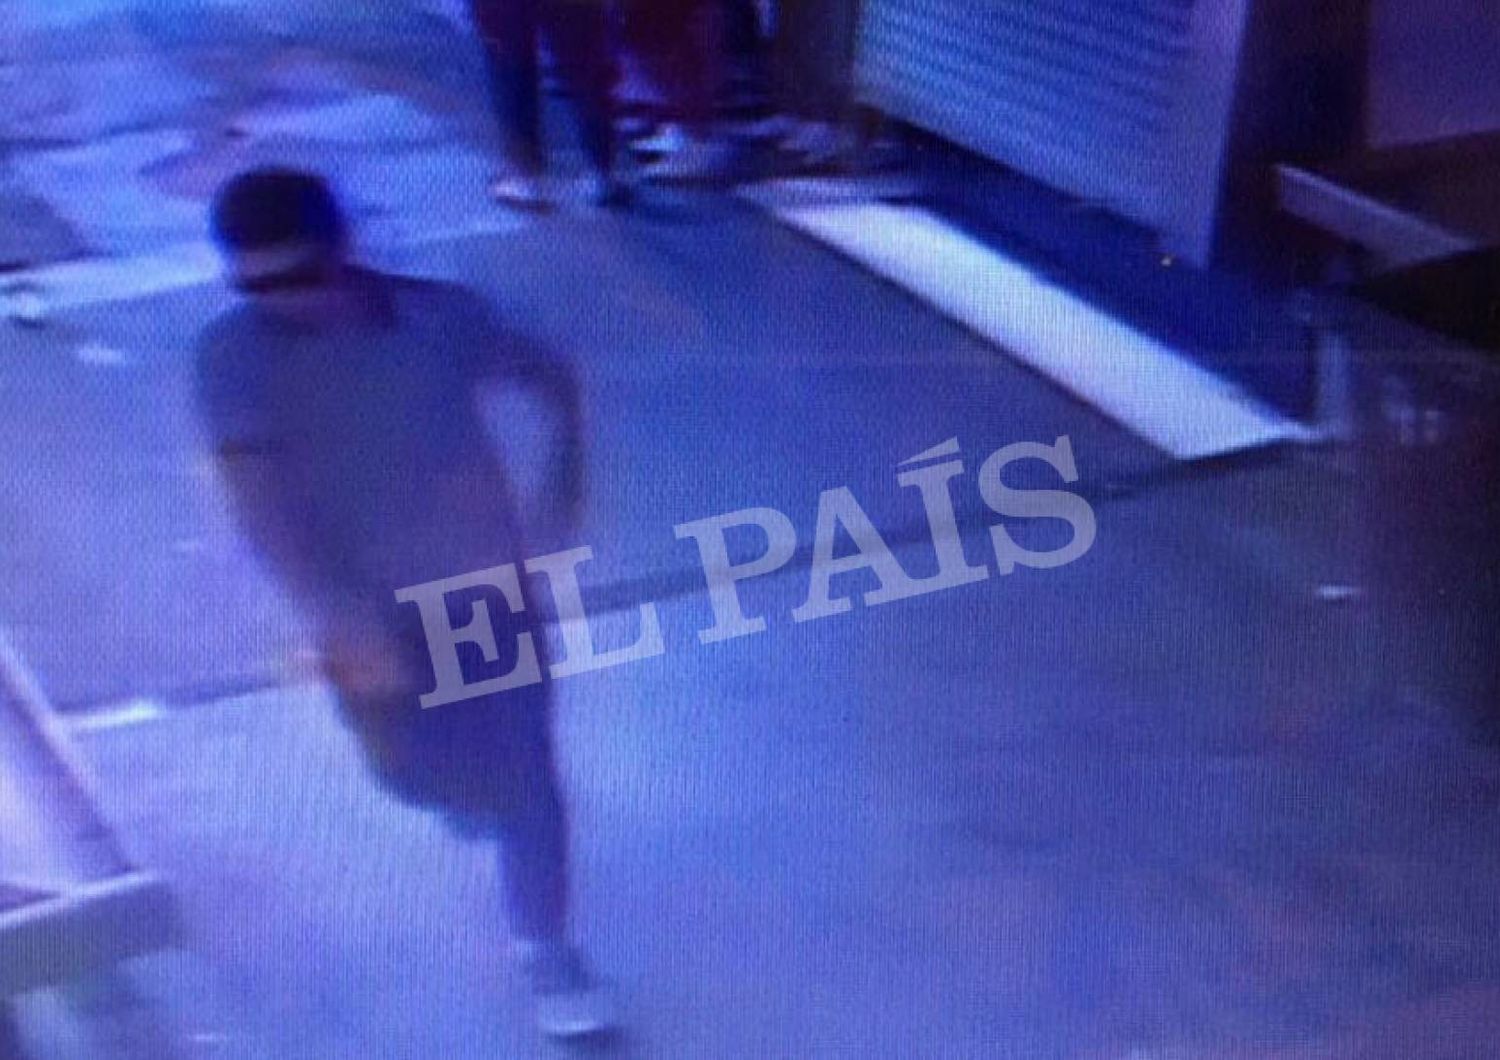 Le immagini del presunto terrorista della Rambla, fuggito per il mercato&nbsp;della Boqueria